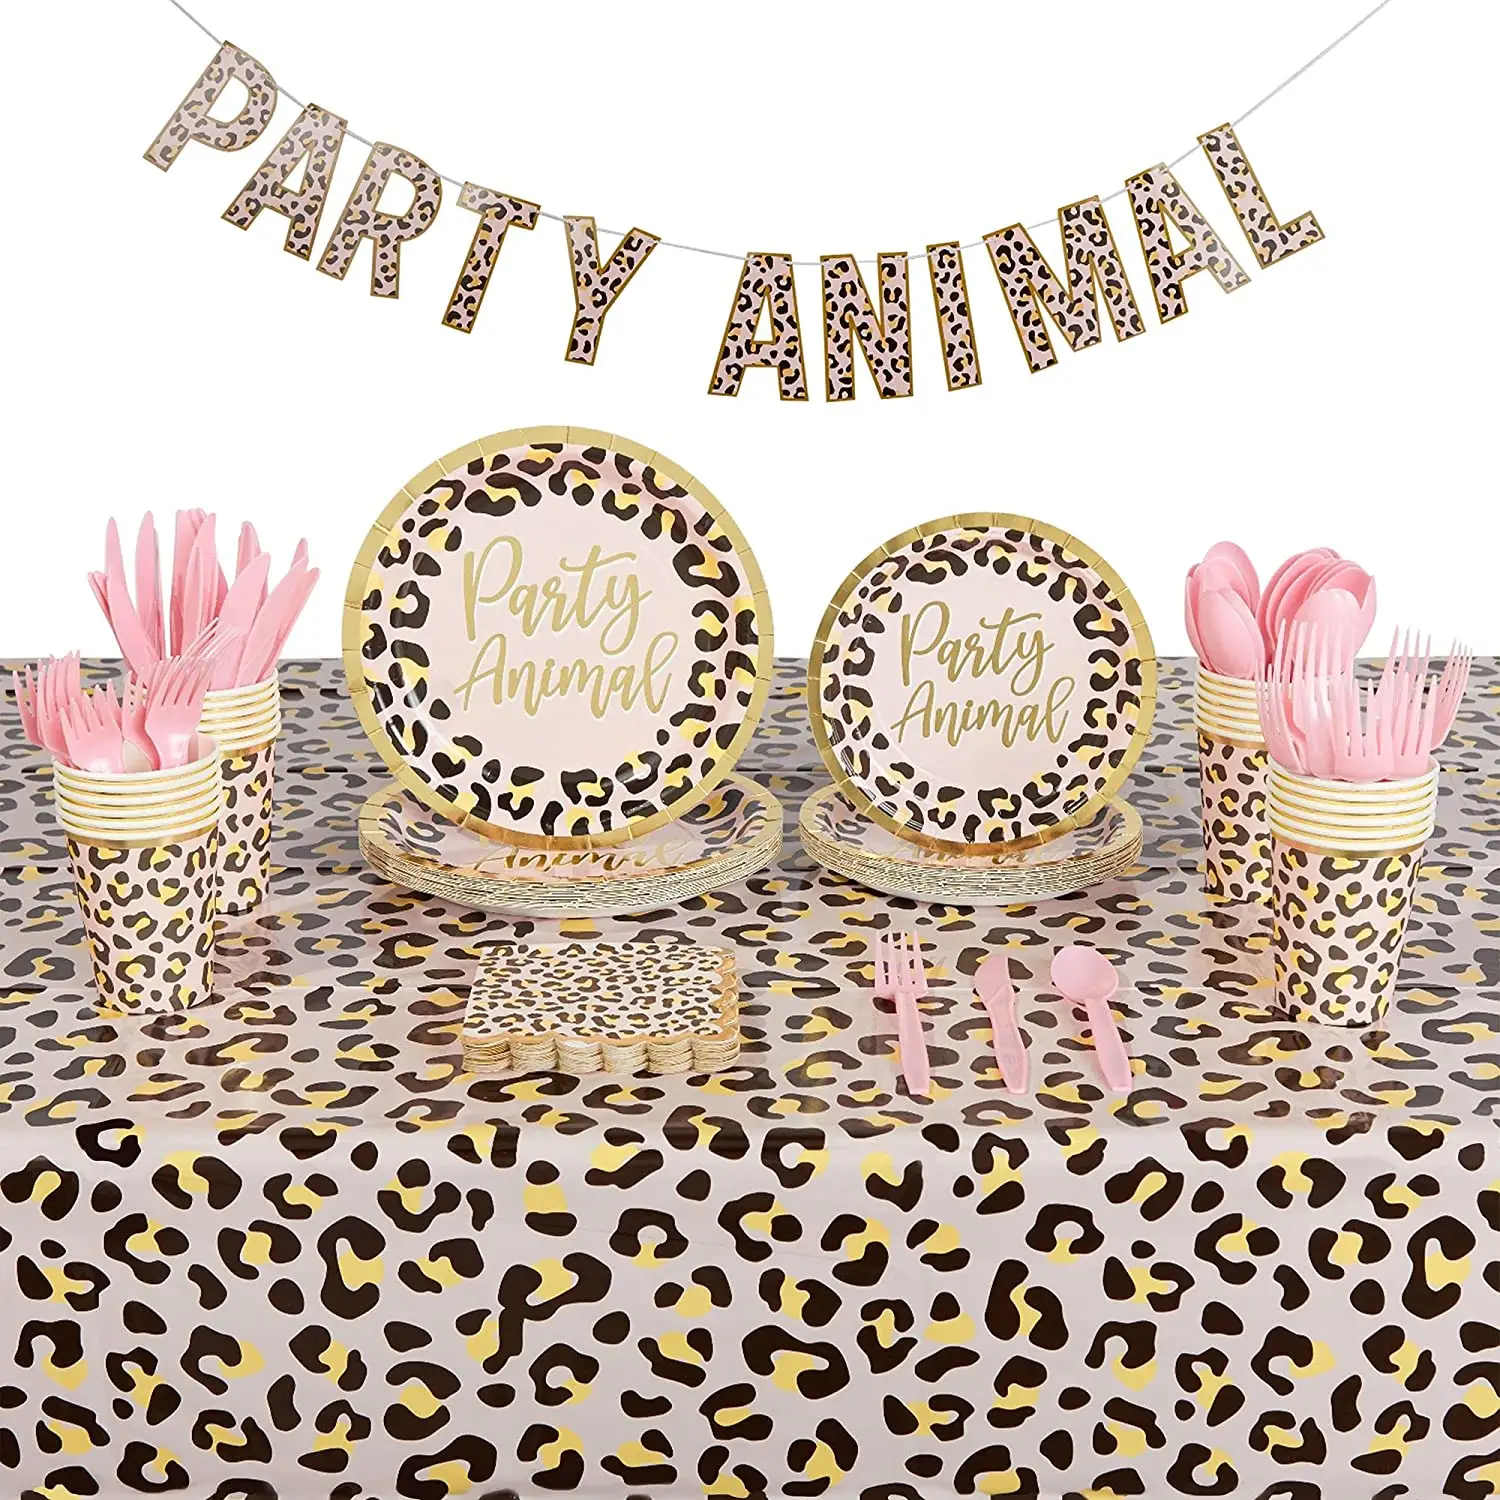 子供の誕生日パーティー食器ピンクヒョウ柄動物パーティー装飾パーティー用品キット